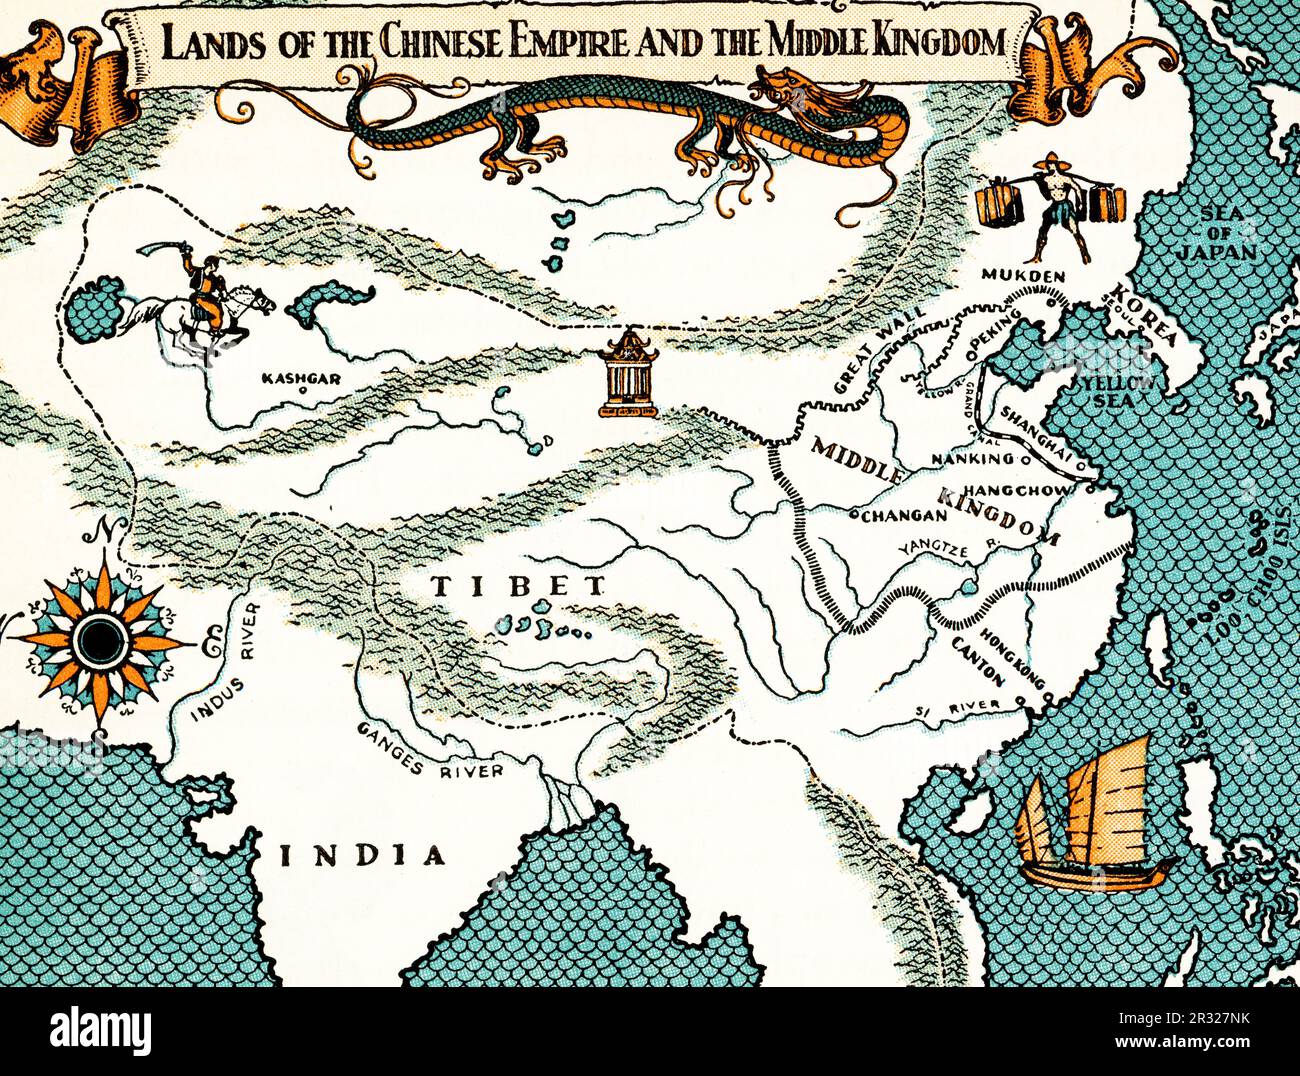 Länder des Chinesischen Reiches und des Mittleren Königreichs c1937. Eine Karte, die das Imperium von China im c14. Jahrhundert darstellt. Stockfoto